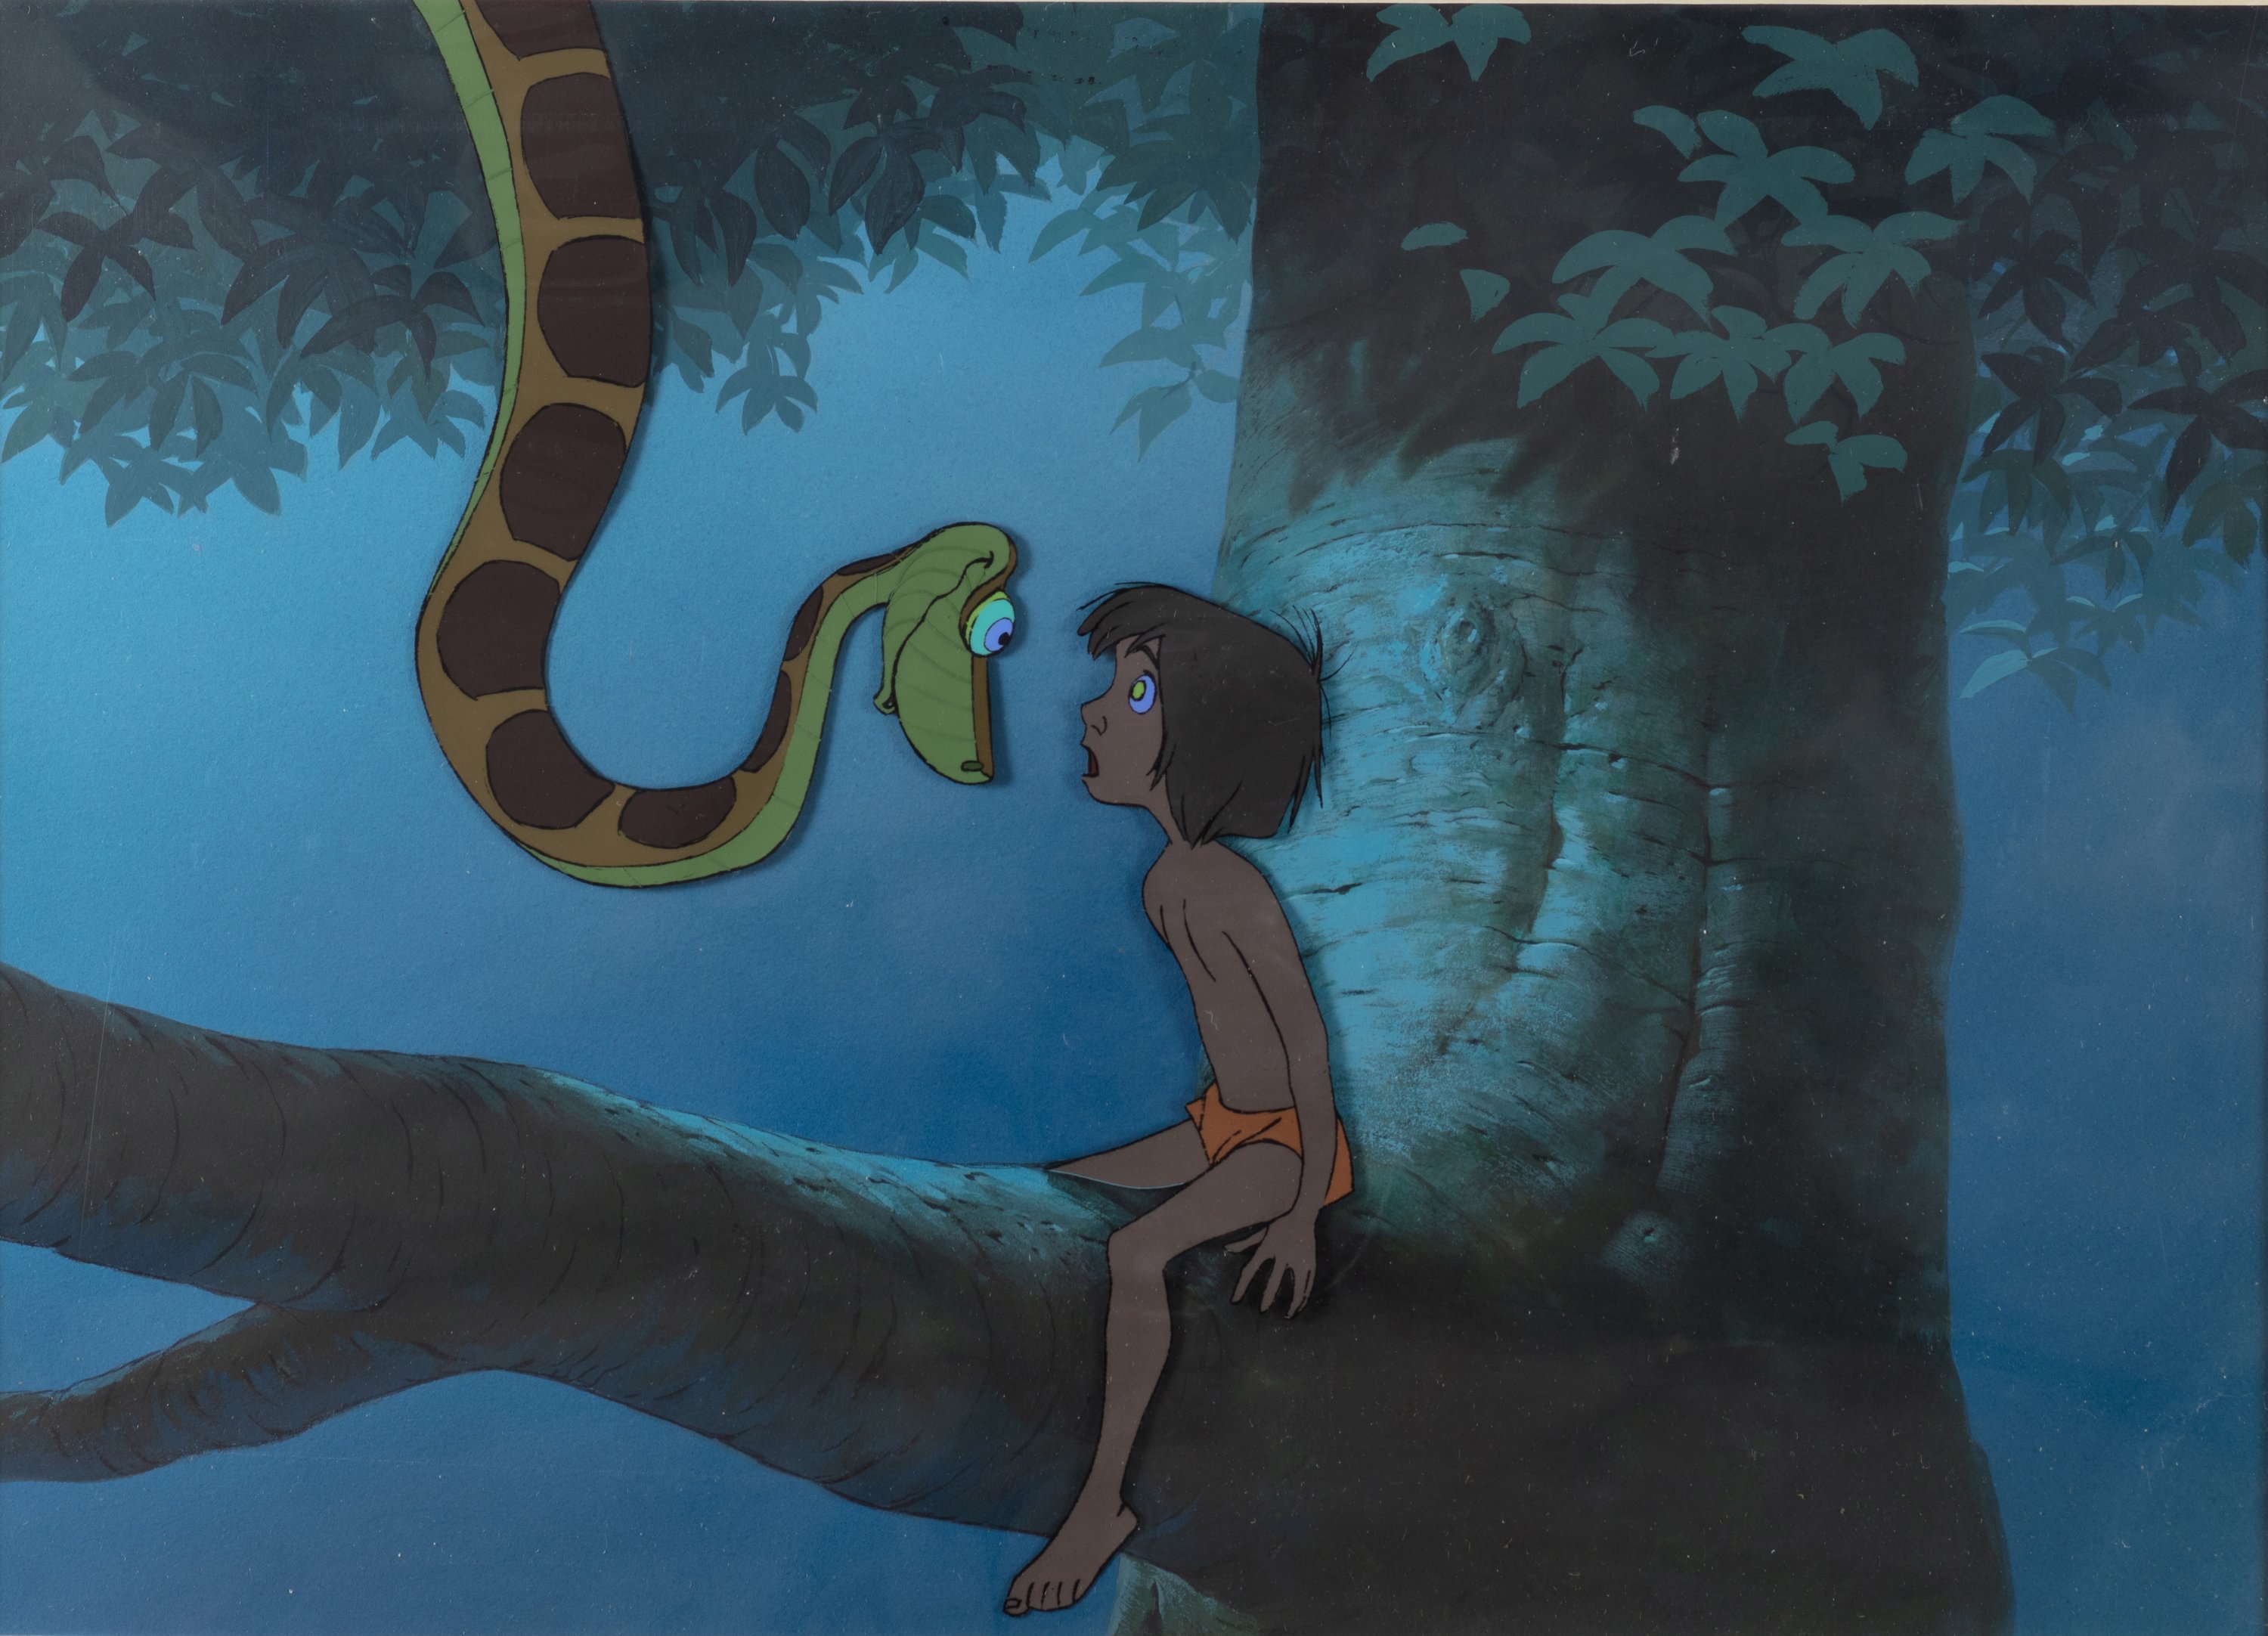 Kaa and Mowgli in the 1967 Disney classic 